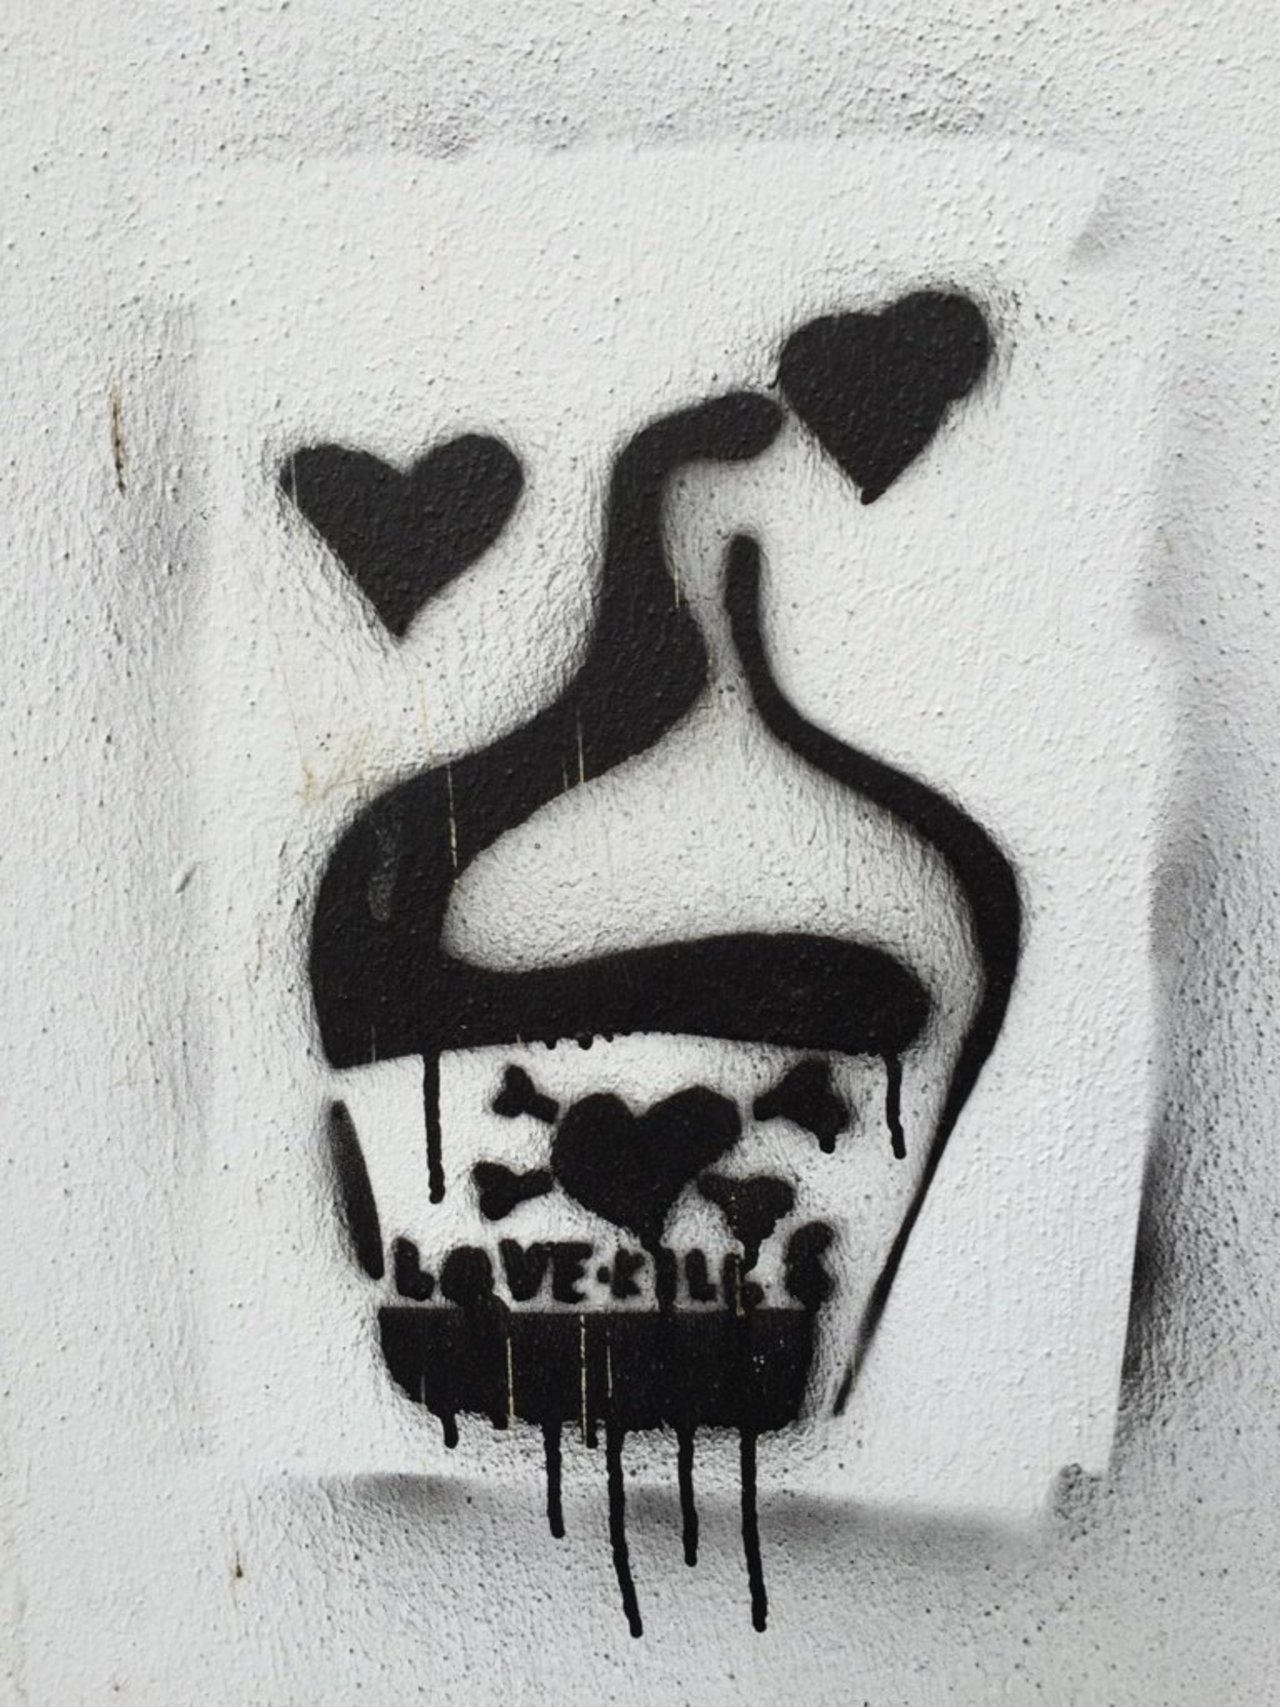 Love kills. #streetart #stencil #graffiti #stötteritz https://t.co/EGvMruM7Z4